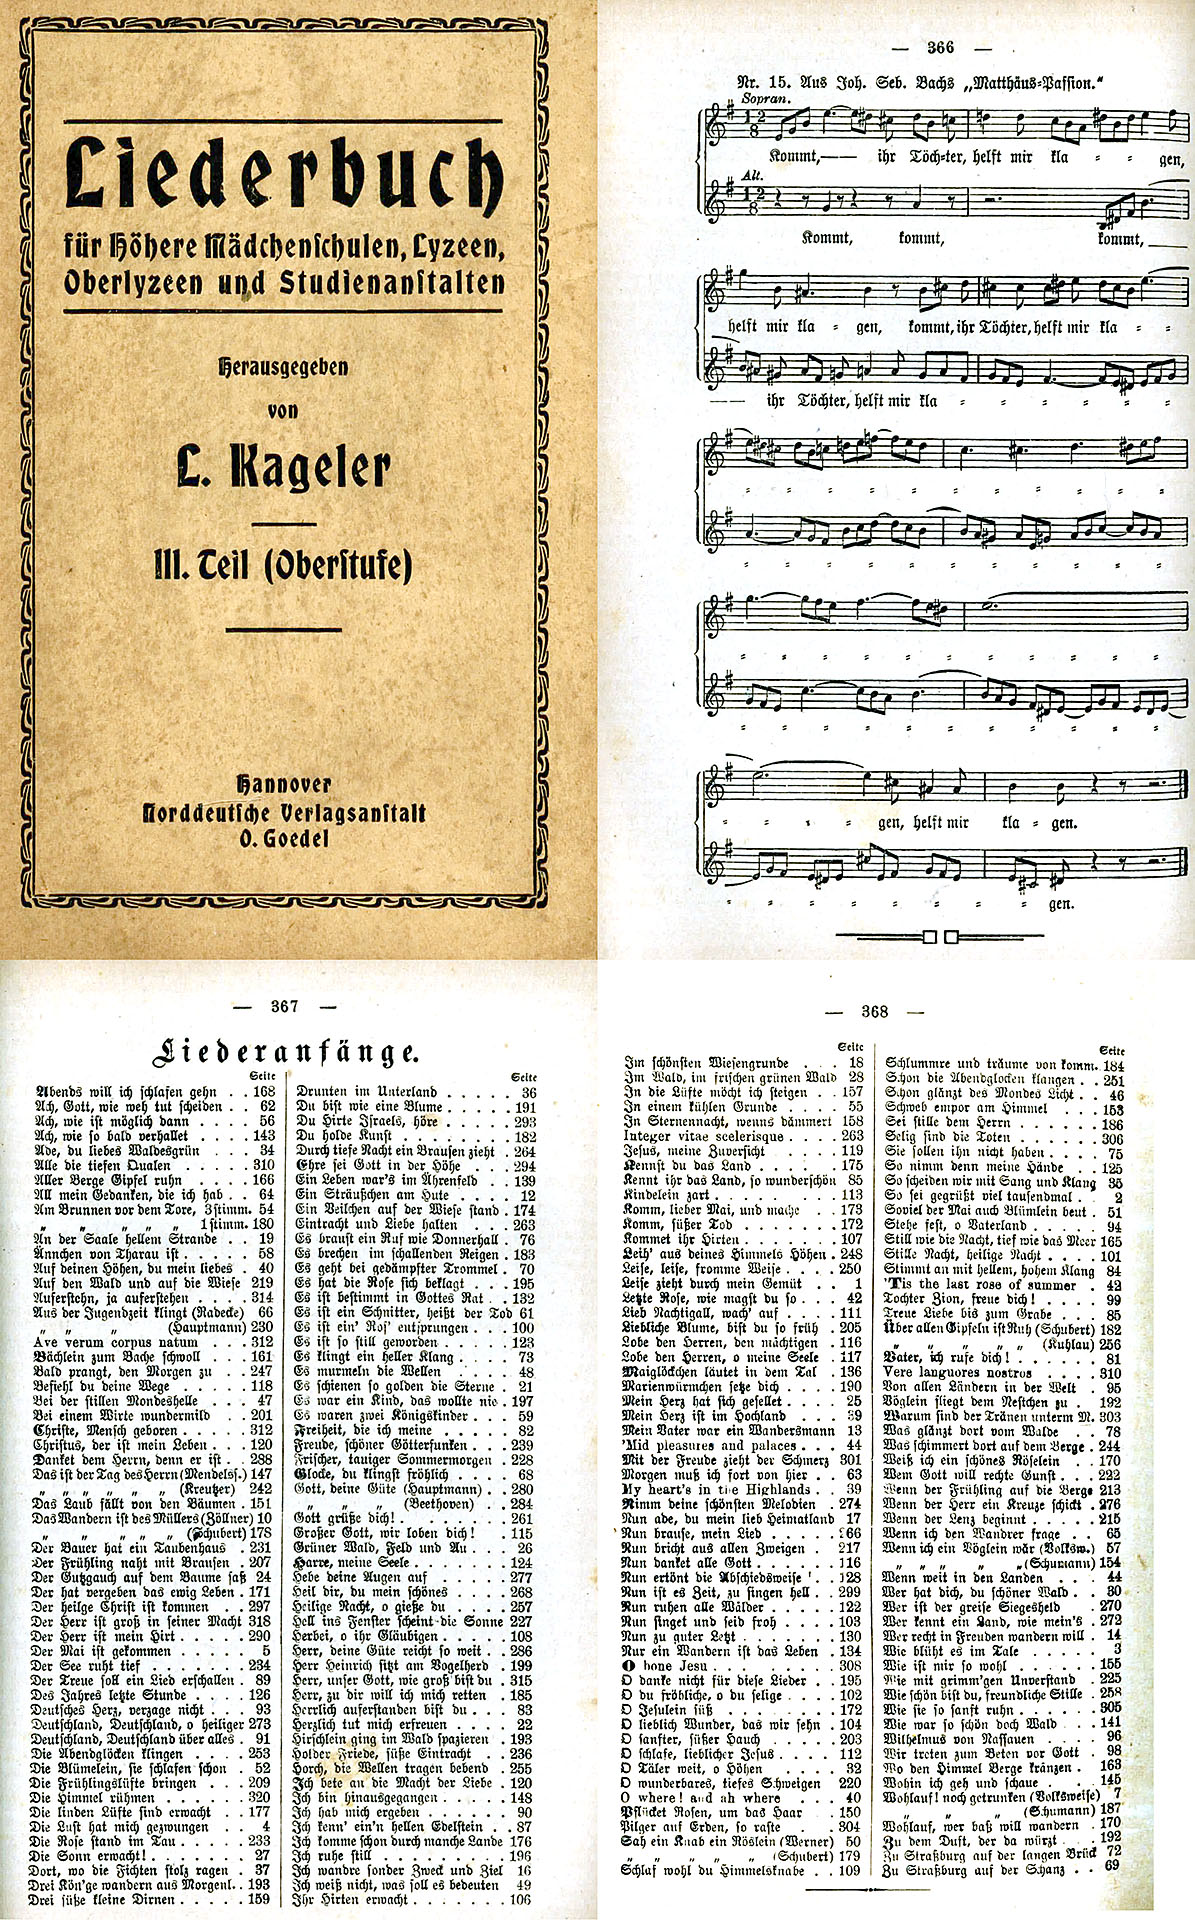 Liederbuch - Kageler, Ludwig